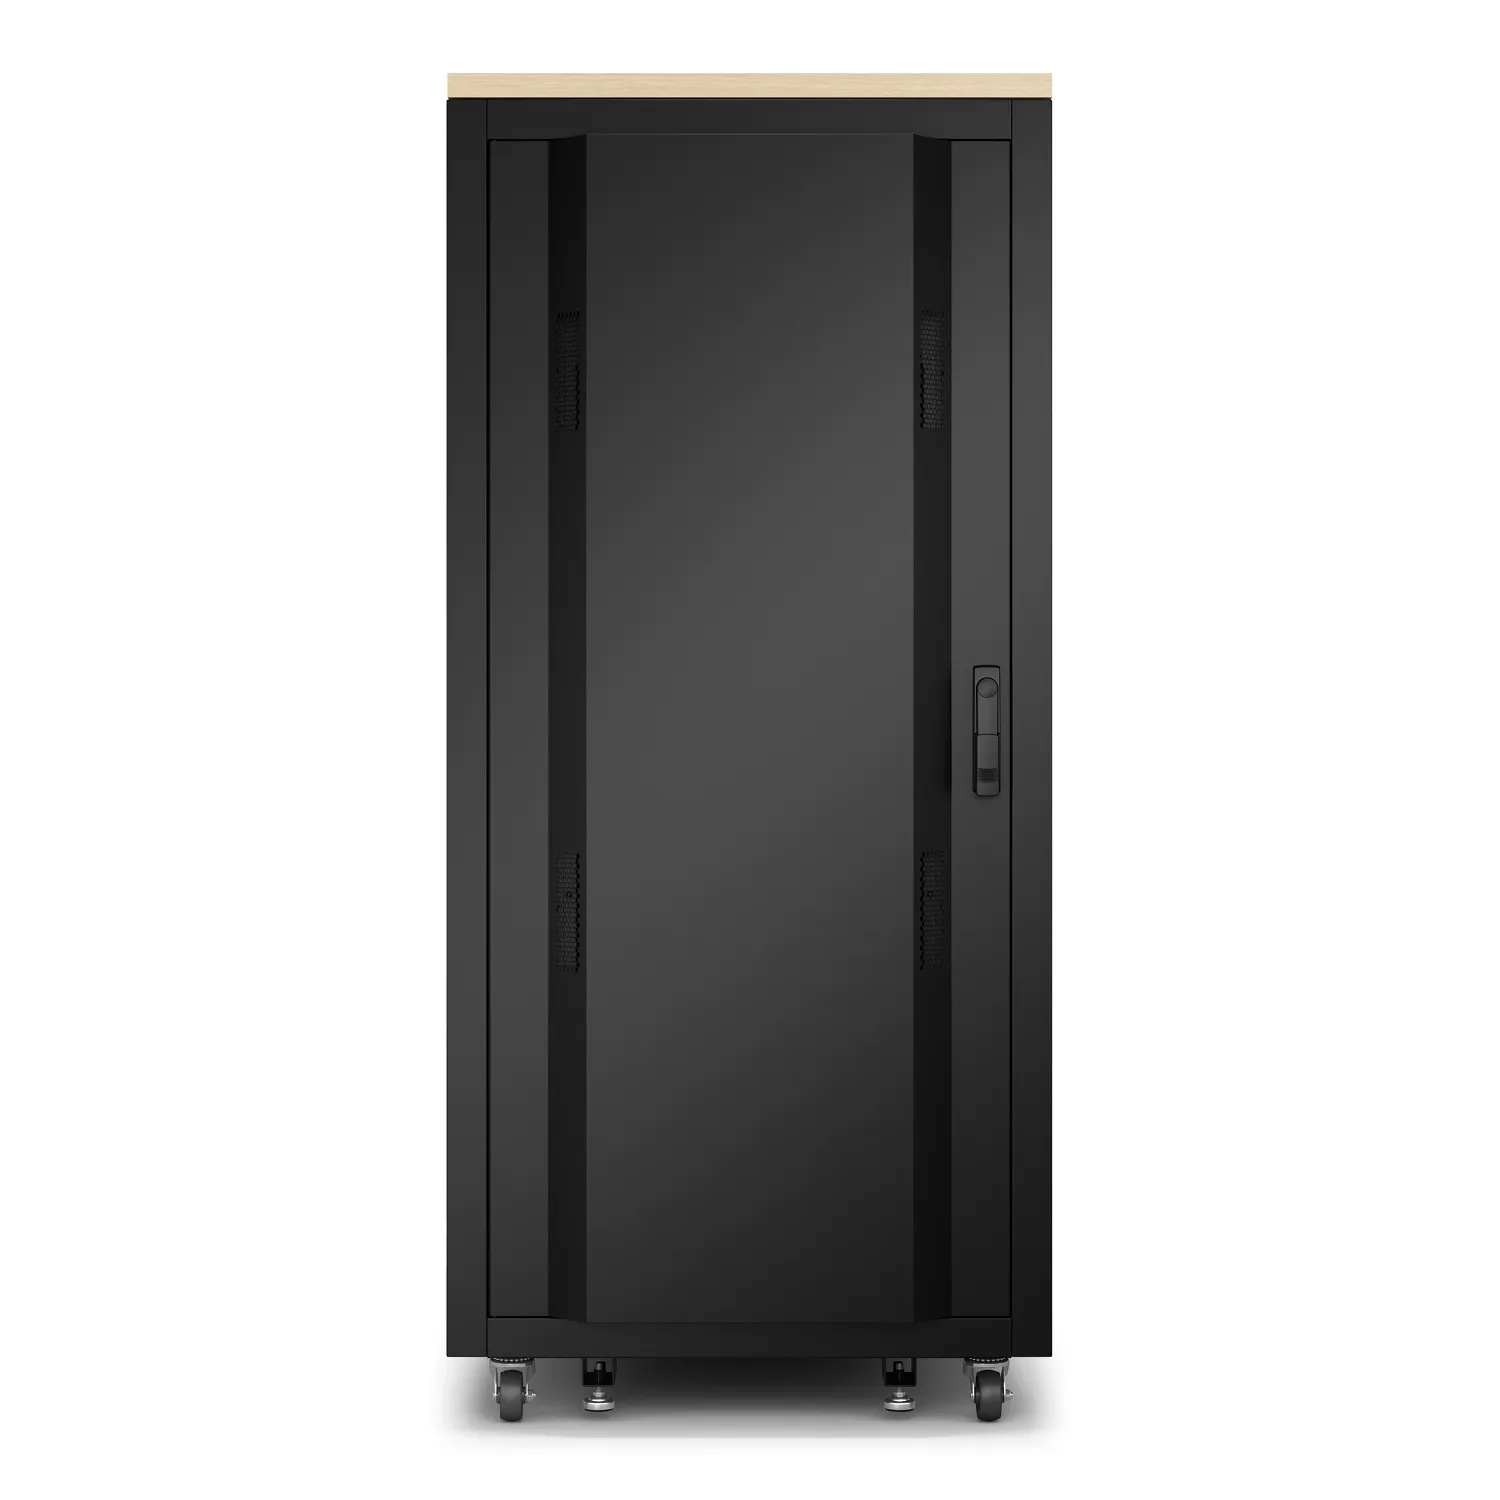 Vente APC NetShelter Soundproof Server Rack 32U 230V 1666H APC au meilleur prix - visuel 4